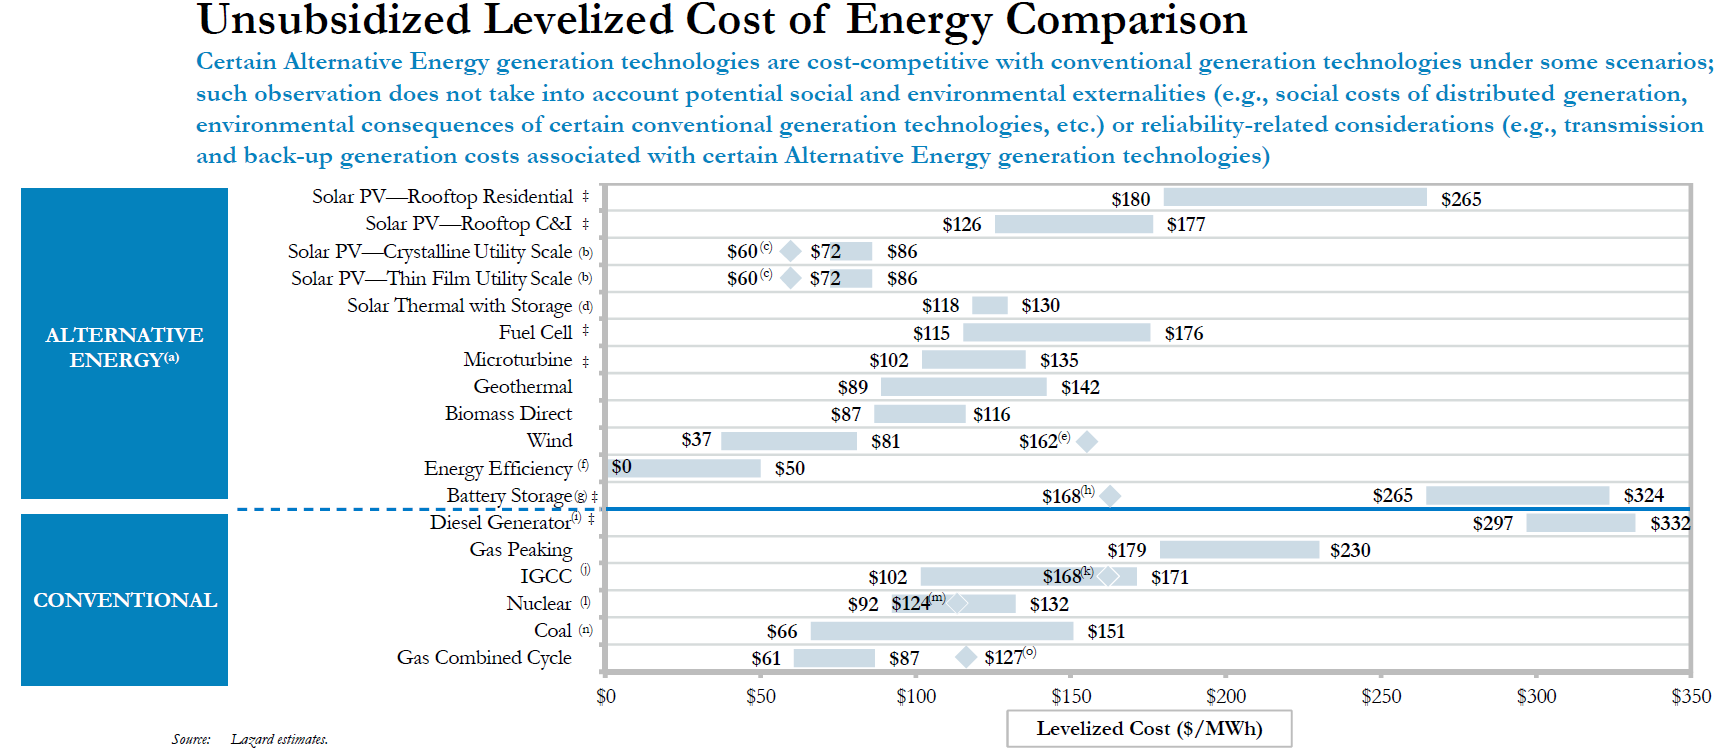 Cumplir las Metas de la LTE No Cuesta Más (3) Costos comparables